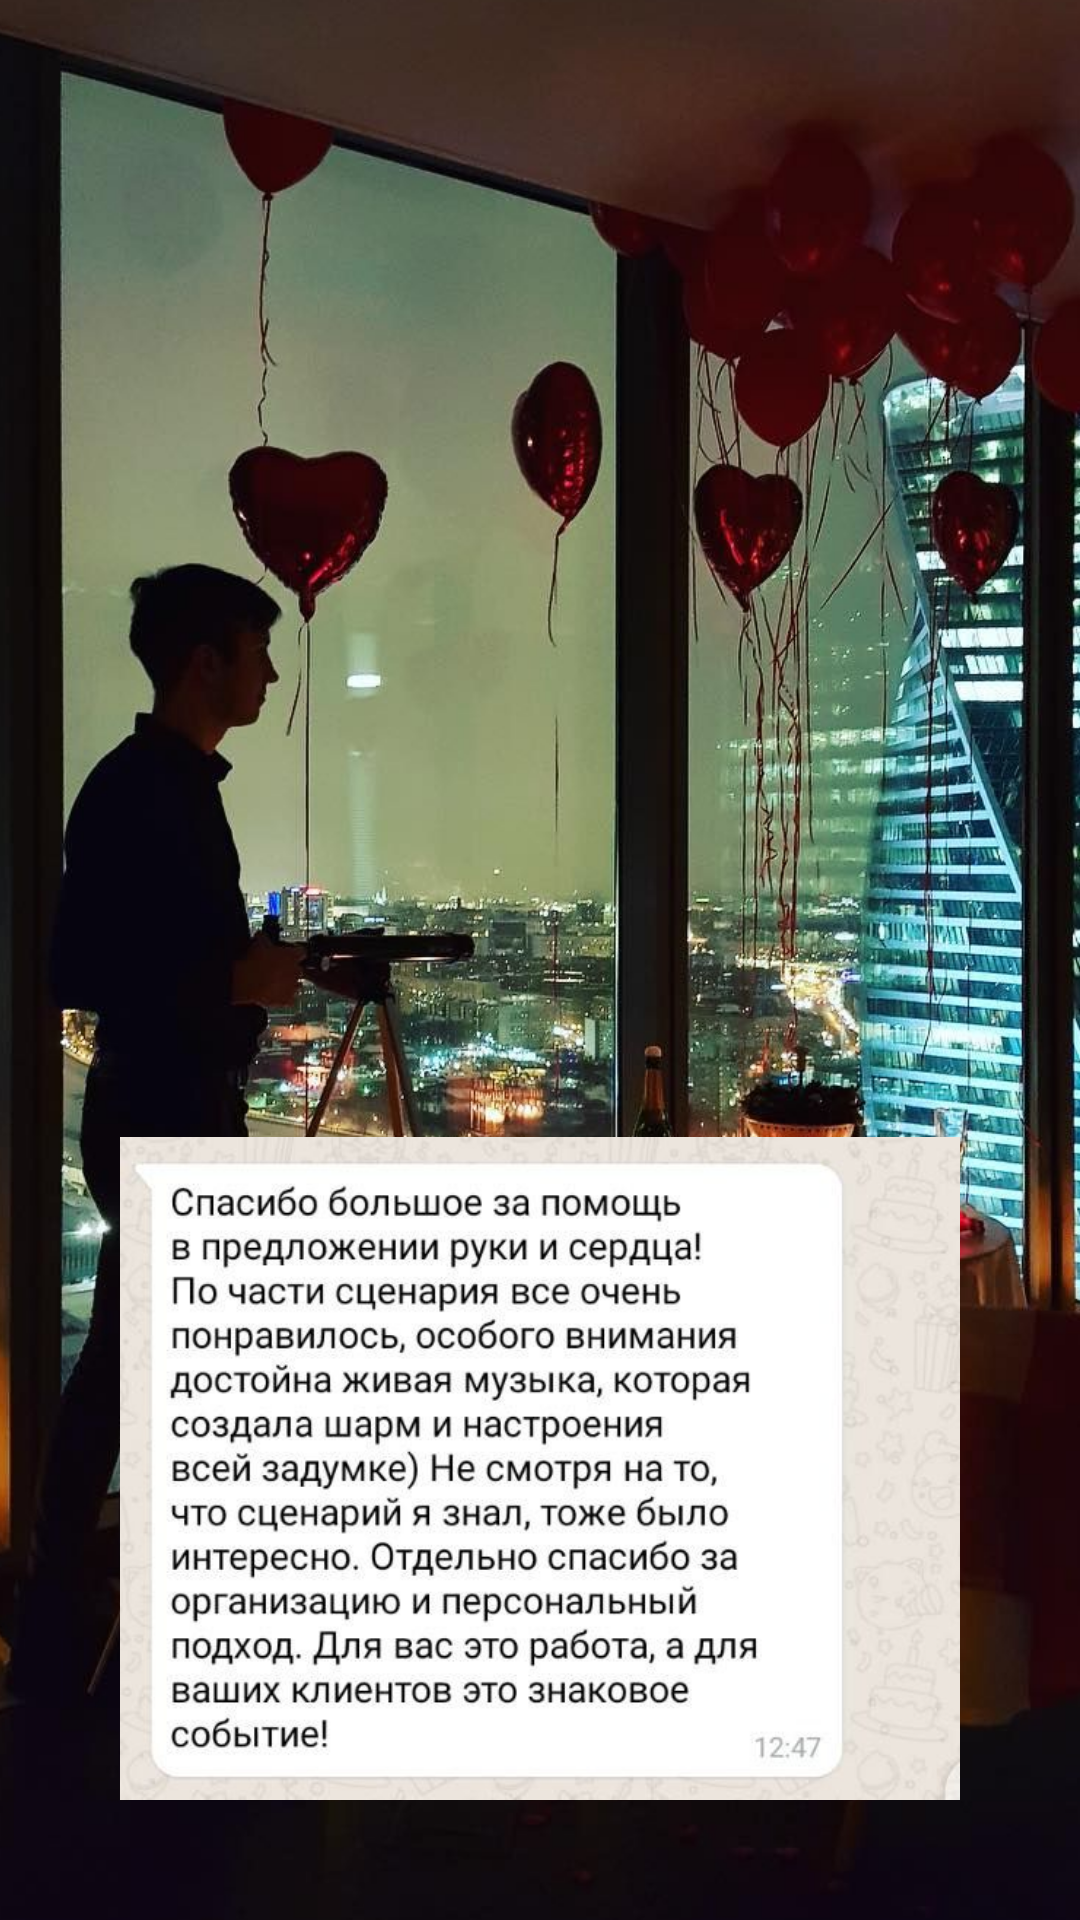 Организация предложения руки и сердца в Иркутске
от компании Pandaevent